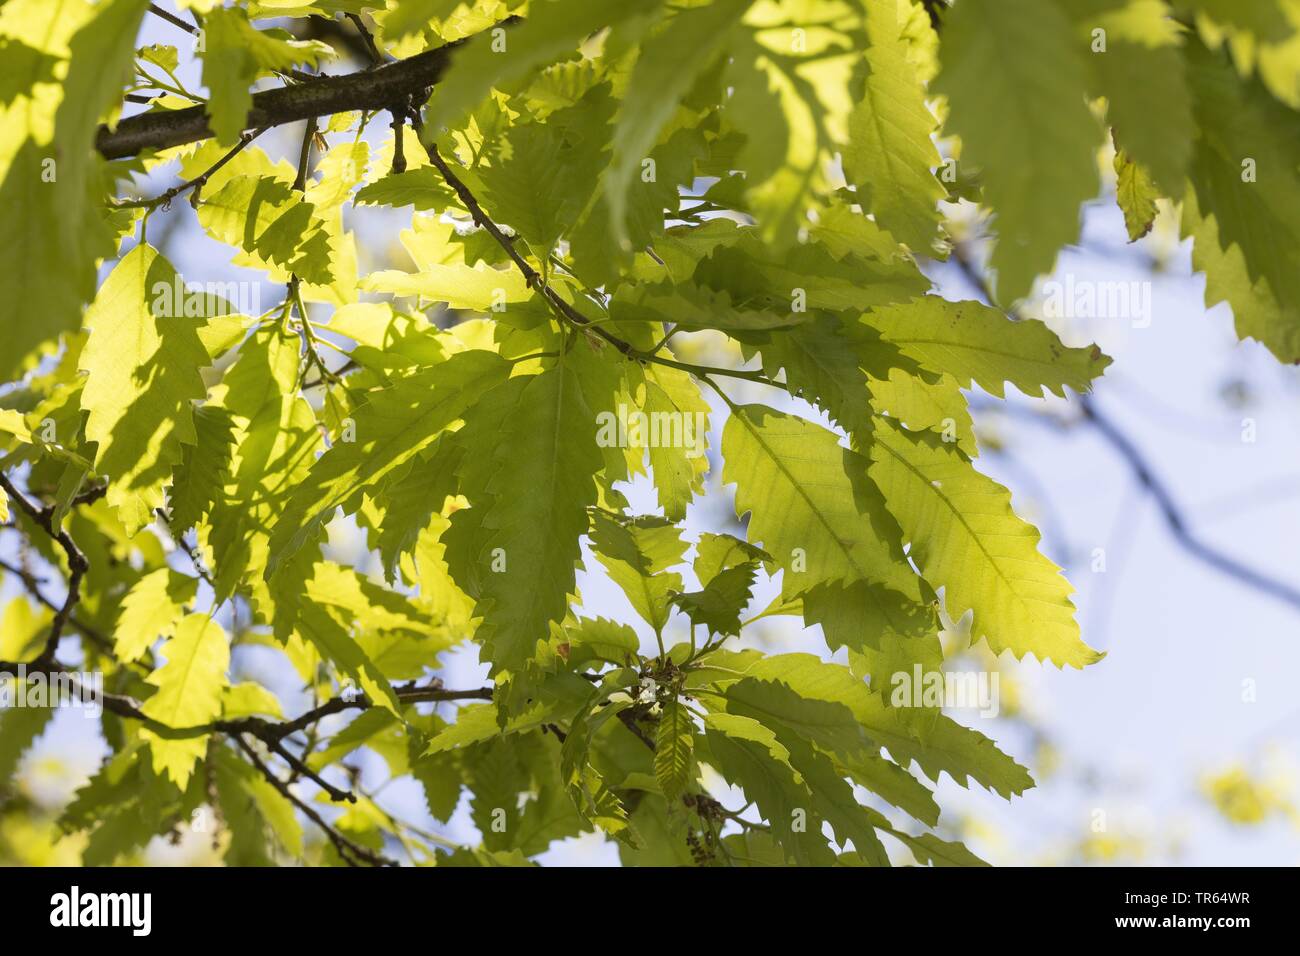 Lebanon oak (Quercus libani, Quercus vesca), branch in backlight Stock Photo